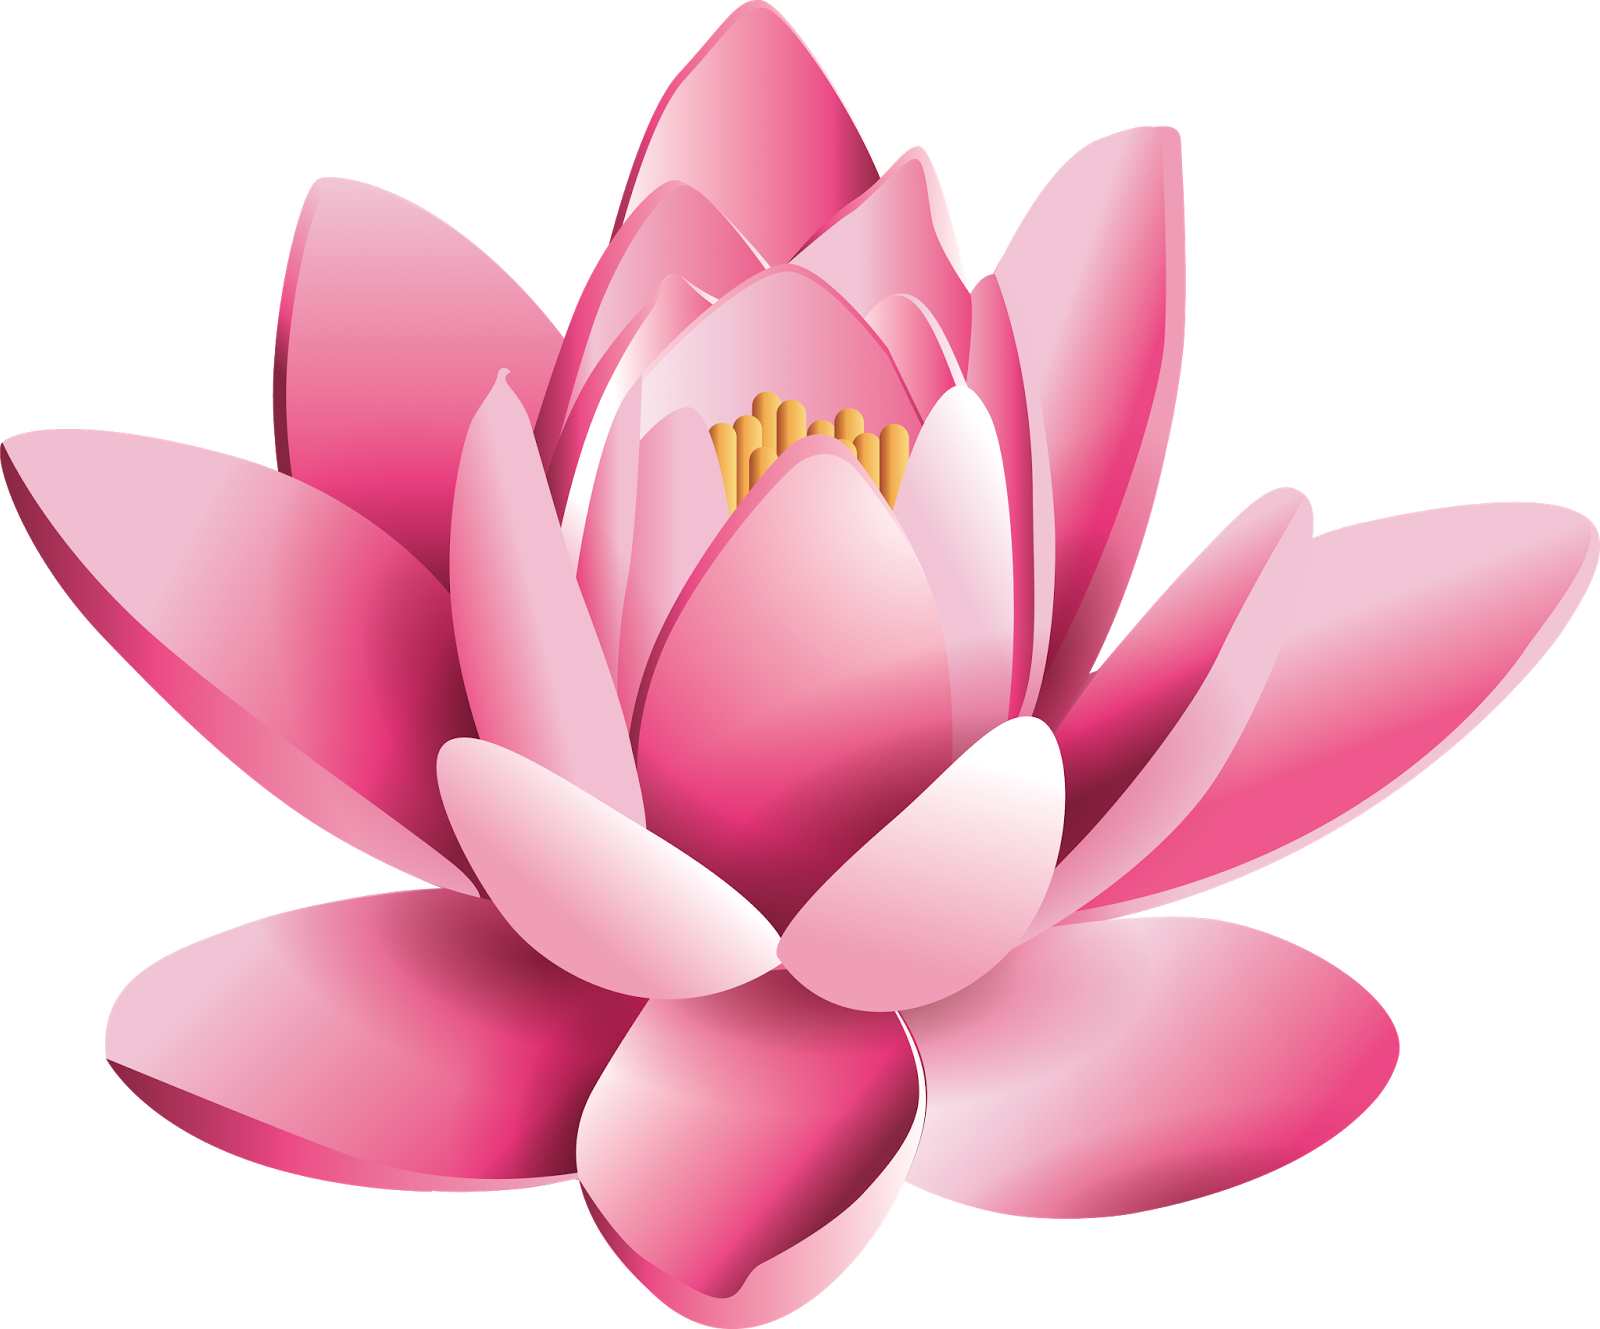 Download PNG image - Pink Lotus Flower PNG Pic 